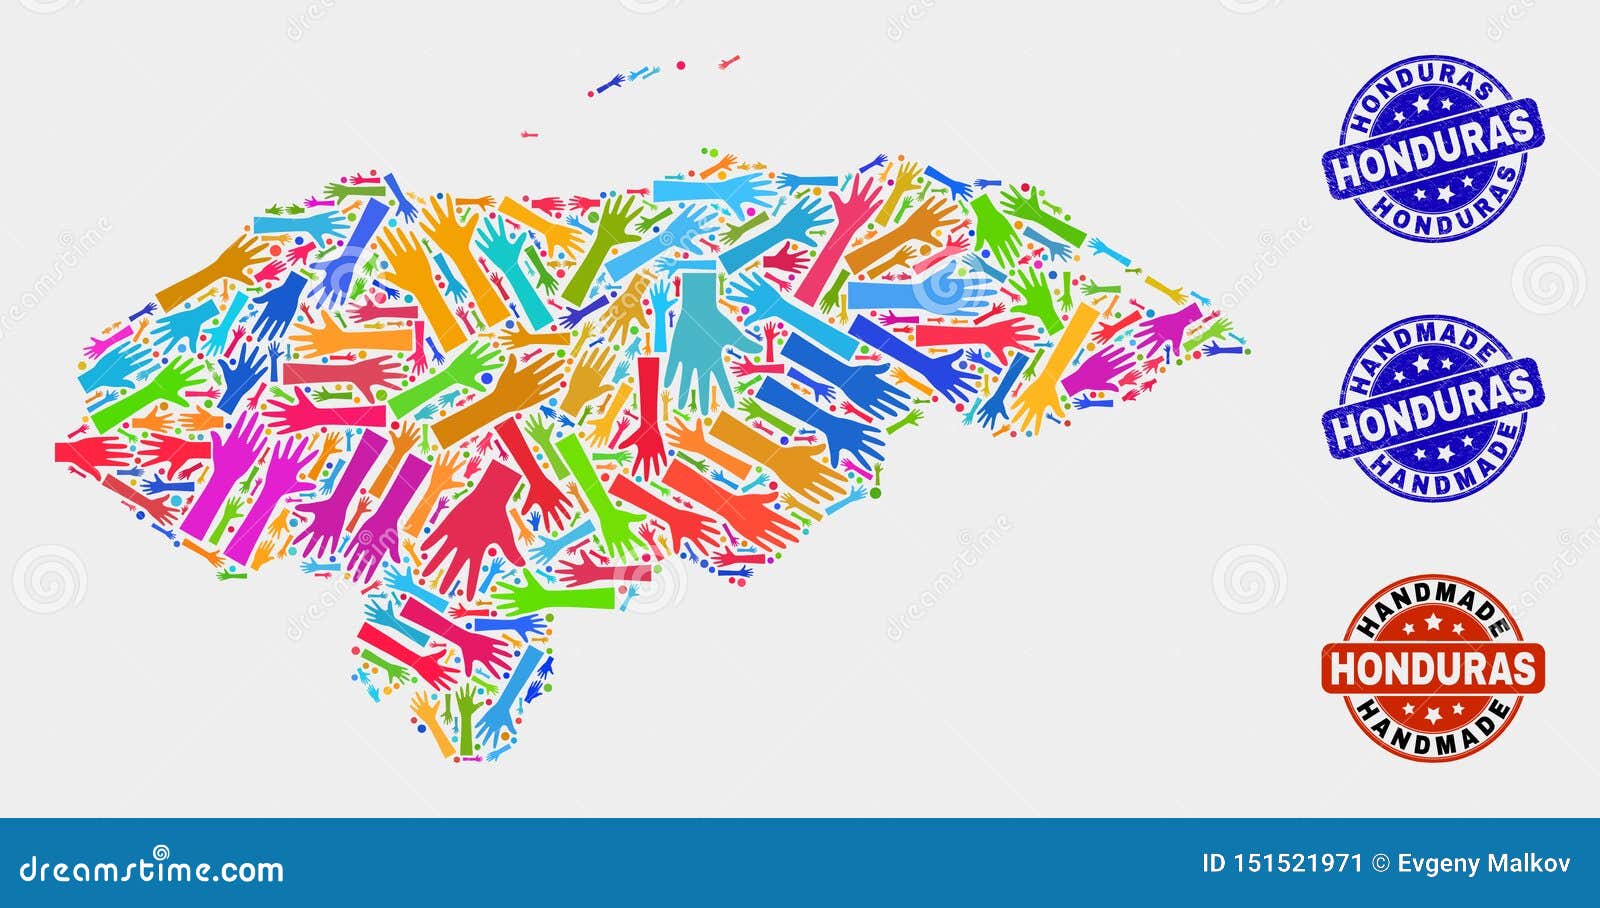 Composition de main de carte du Honduras et de joints faits main grunges. Combinaison faite main de vecteur de carte du Honduras et de joints en caoutchouc La carte du Honduras de mosaïque est conçue des mains colorées lumineuses aléatoires Joints arrondis avec la texture en caoutchouc corrodée